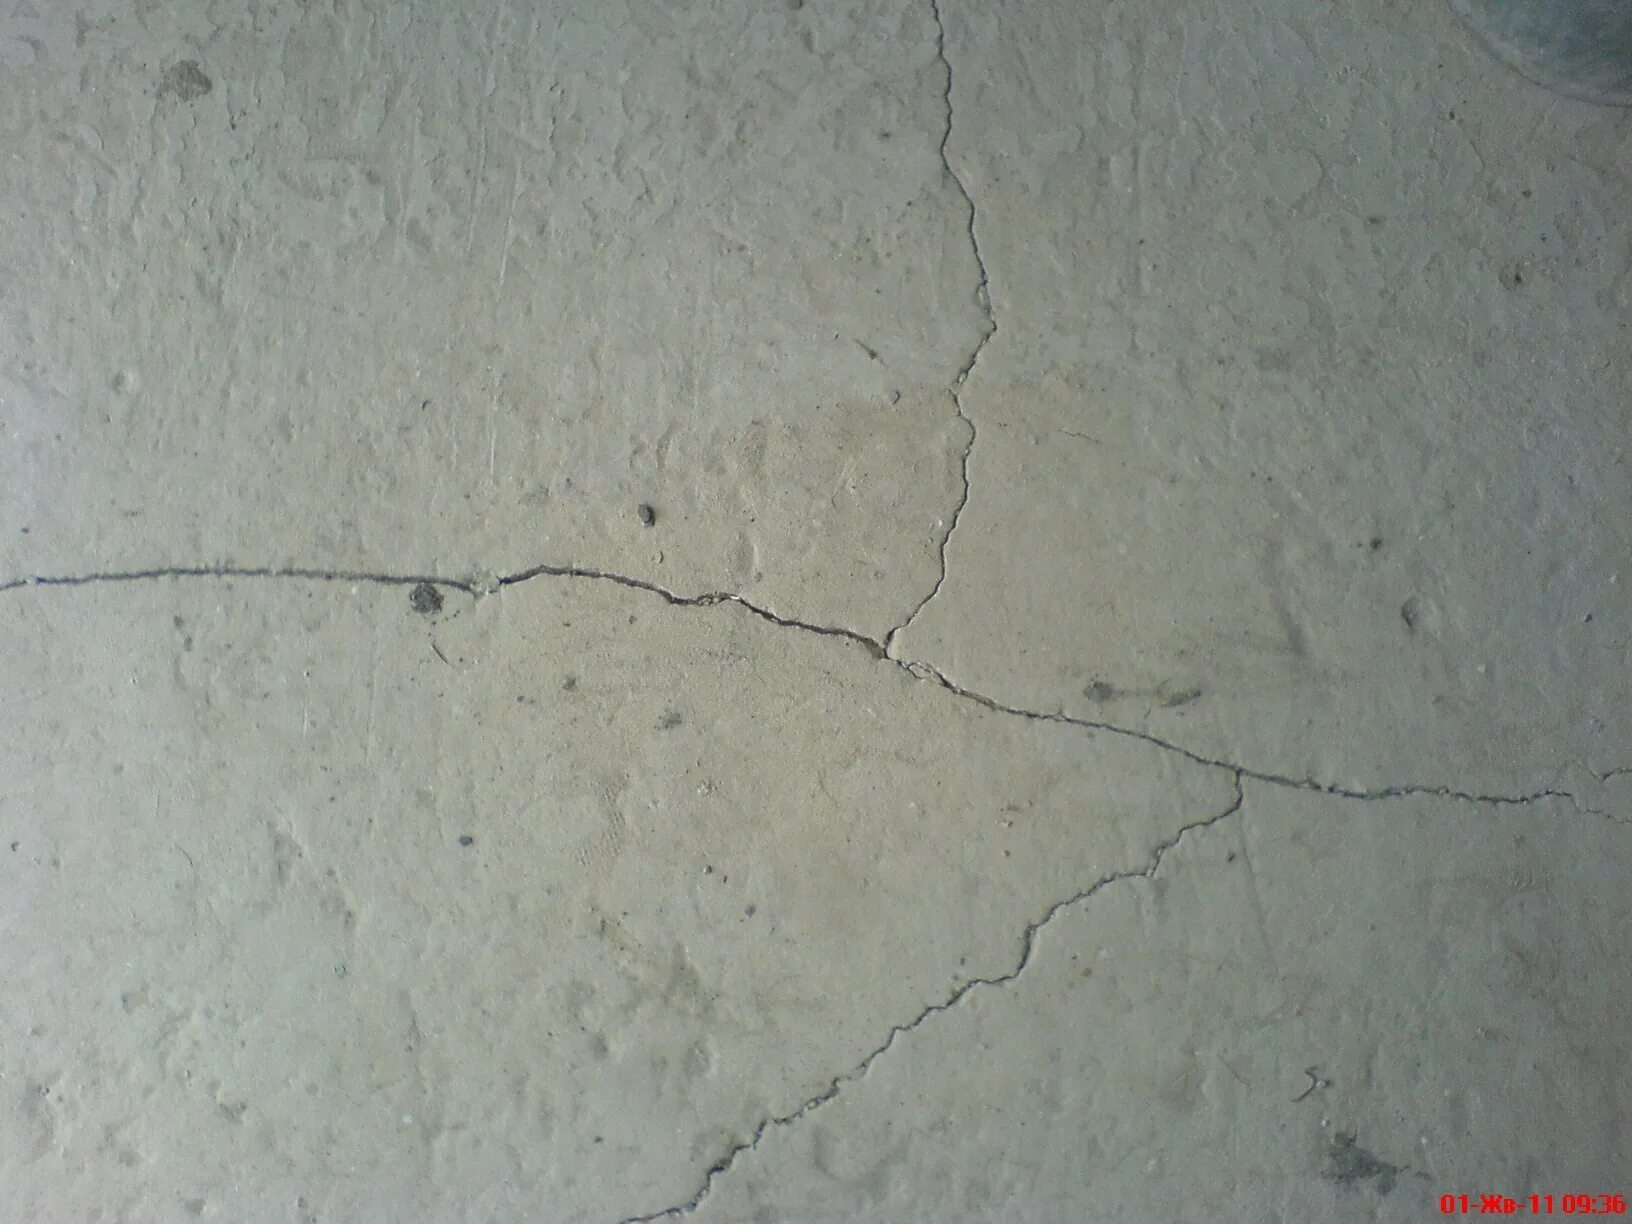 Пошла трещина по стене. Усадочные трещины в штукатурном слое. Волосяные усадочные трещины. Усадочные трещины в штукатурном слое, частичное отслоение штукатурки. Трещины на гипсовой штукатурке.